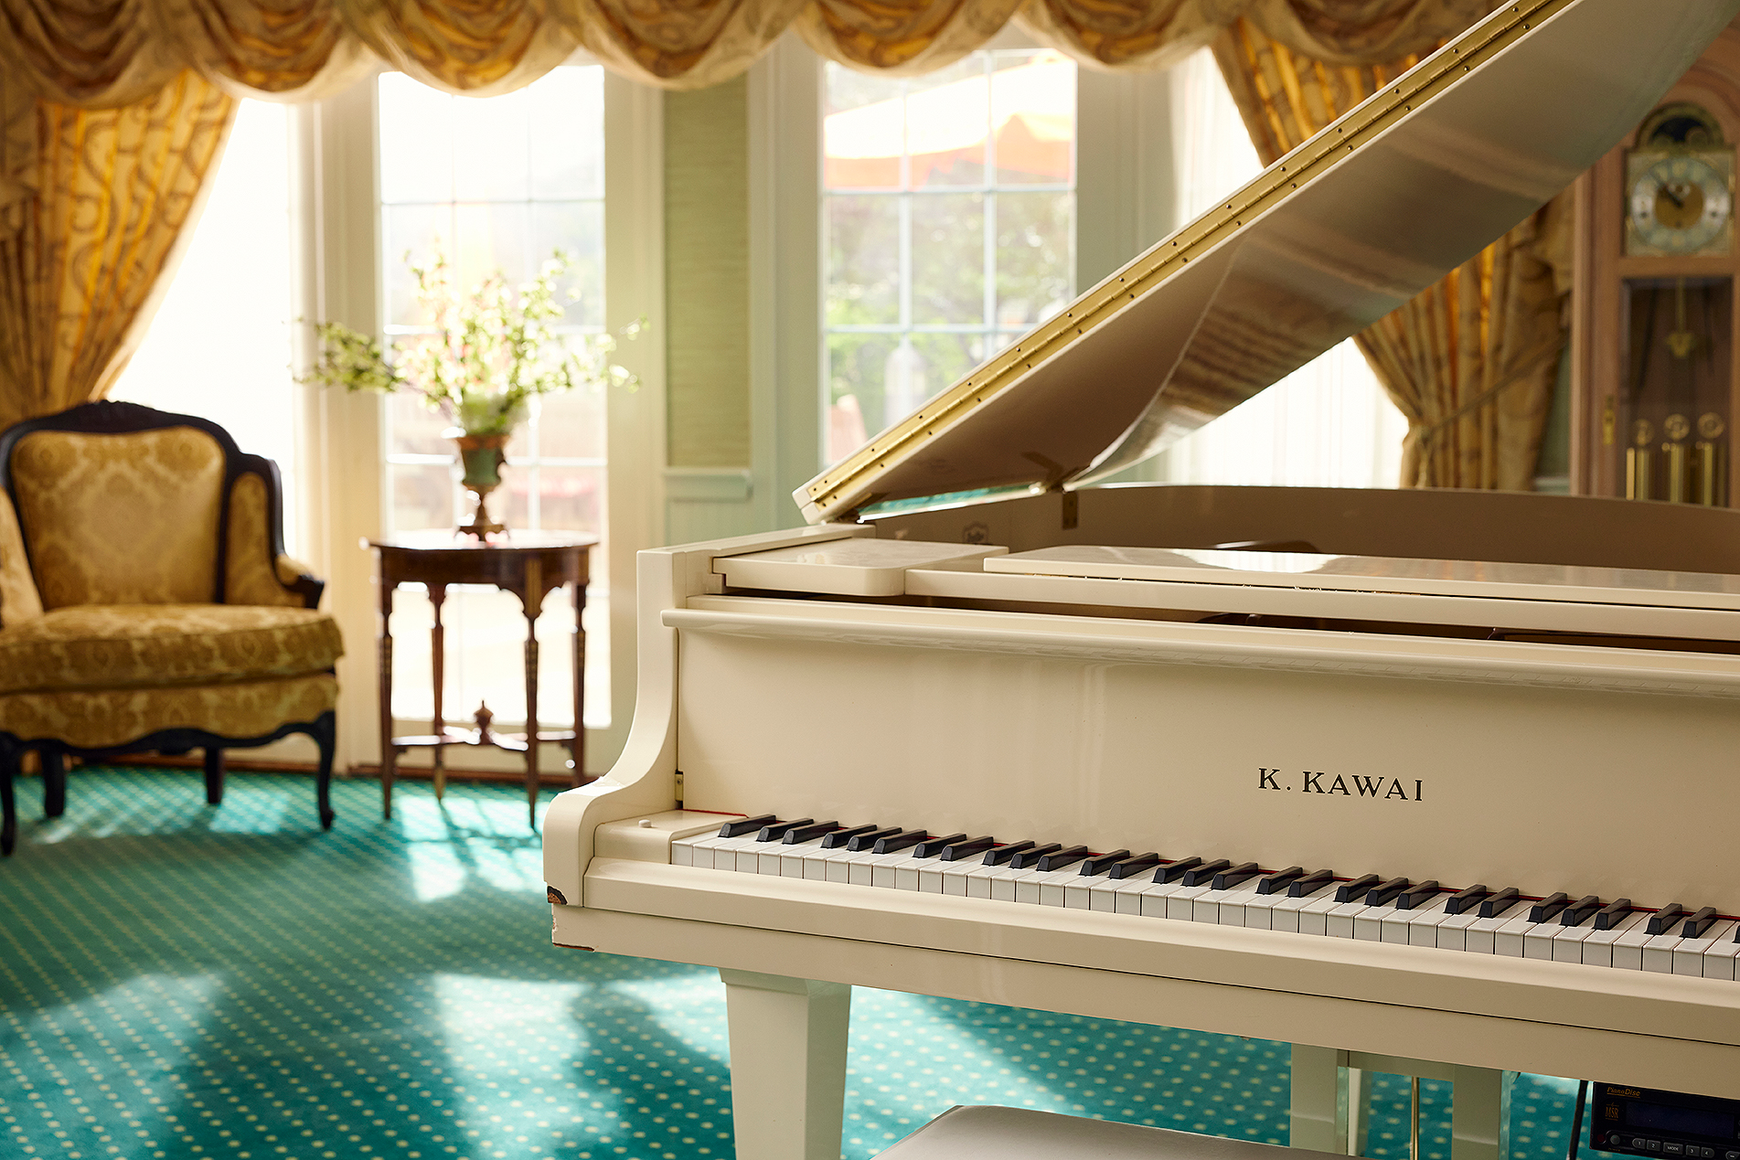 A K. Kawai baby grand piano